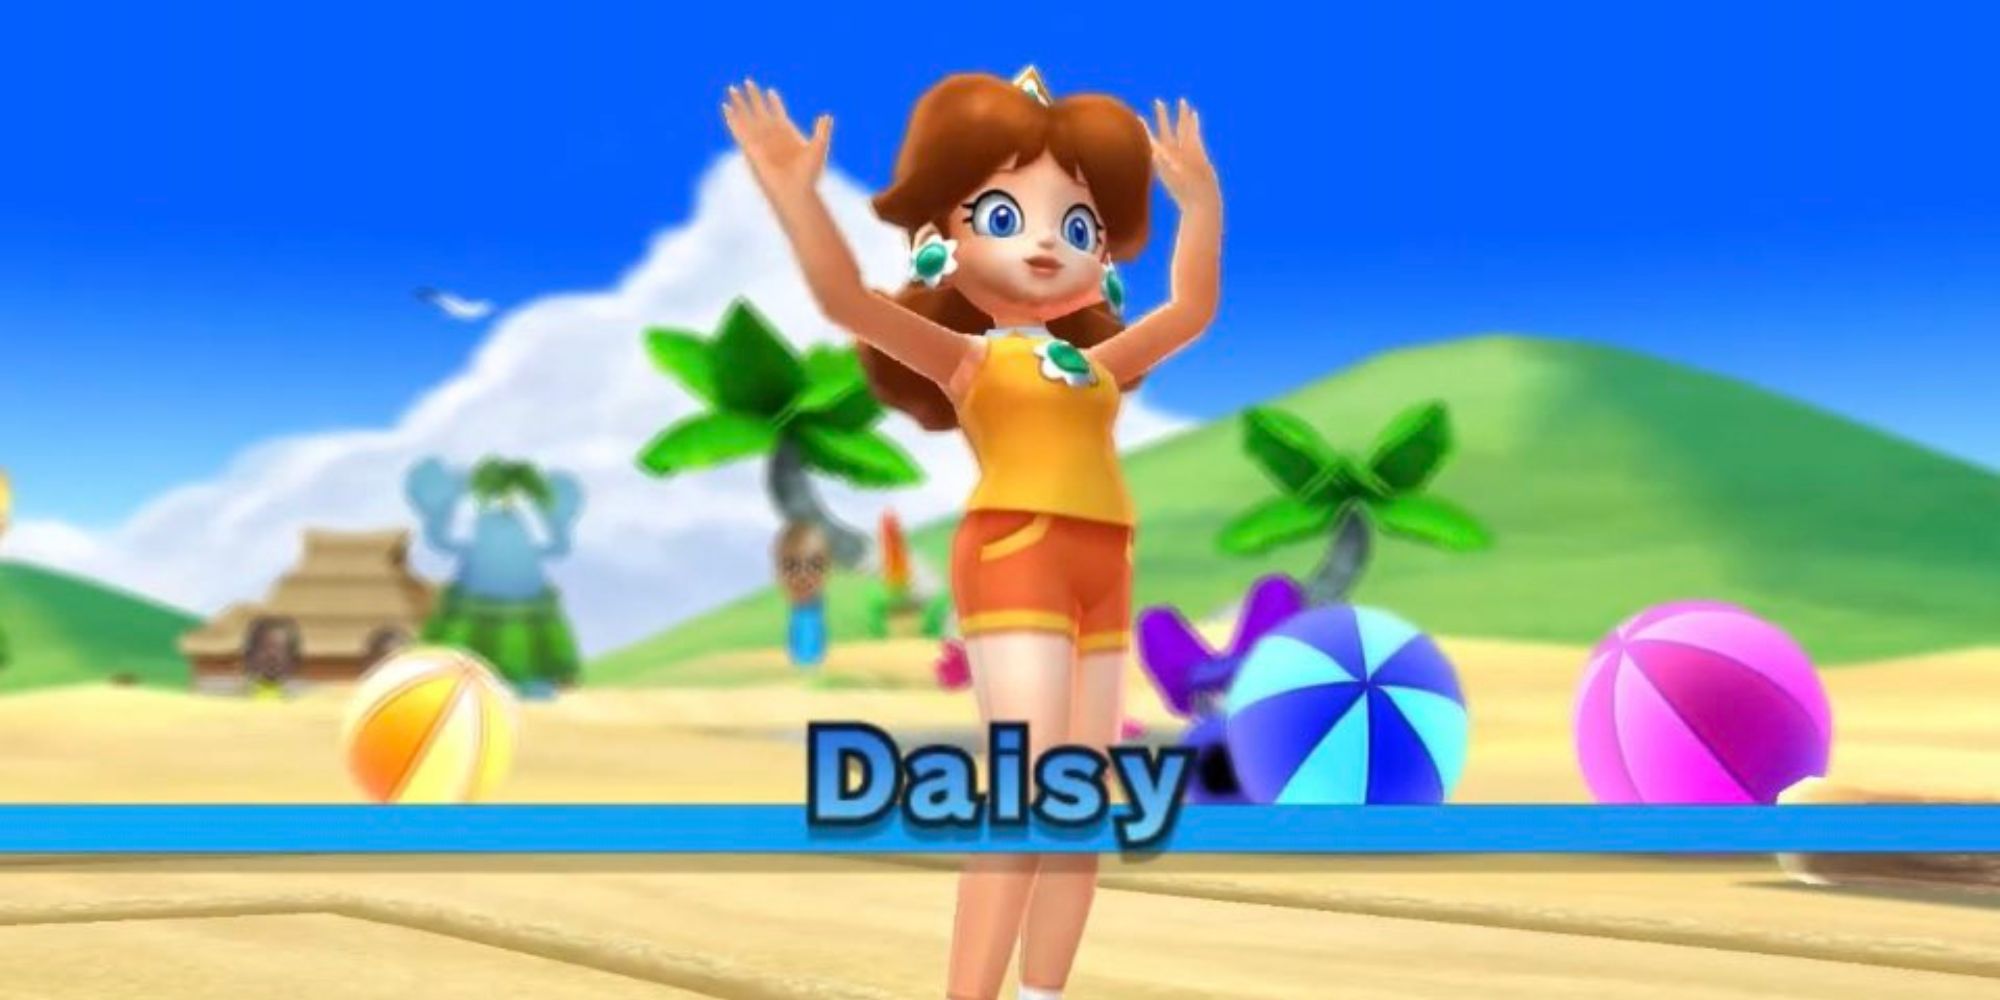 Daisy in Mario Sports Mix